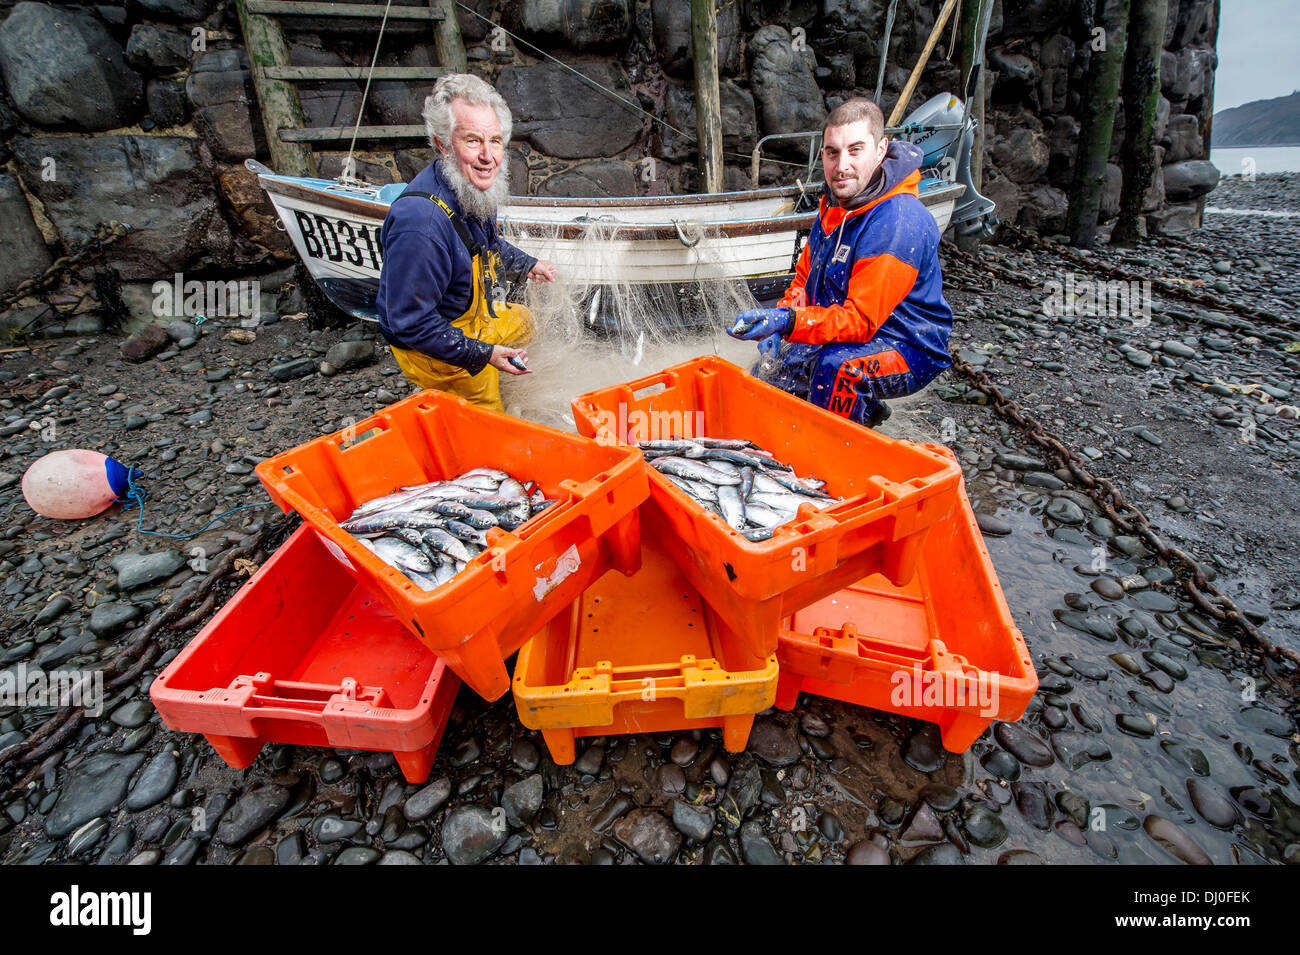 Fishermen Chris Braund (left) and Jordan Ross unloading their nets of fish at the annual Clovelly herring festival, Devon UK Stock Photo